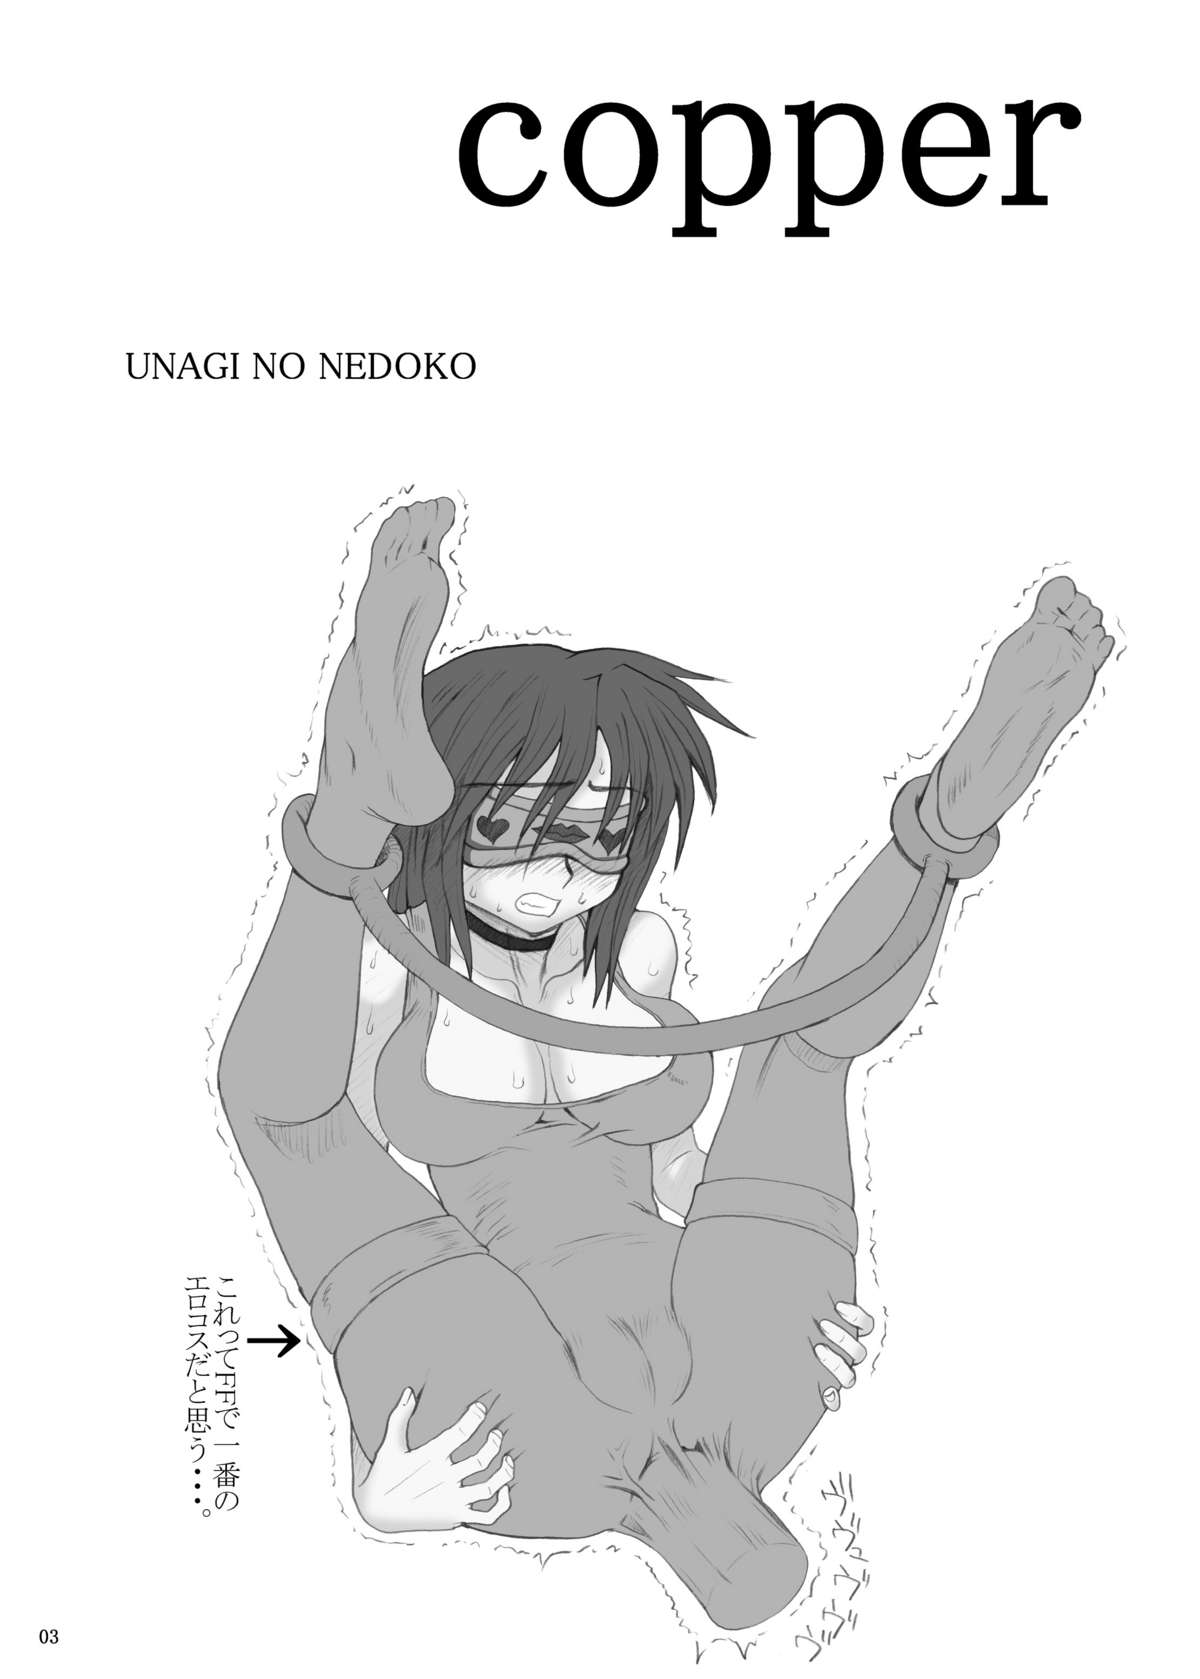 [ Unagi no Nedoko] copper (Street Fighter) page 2 full